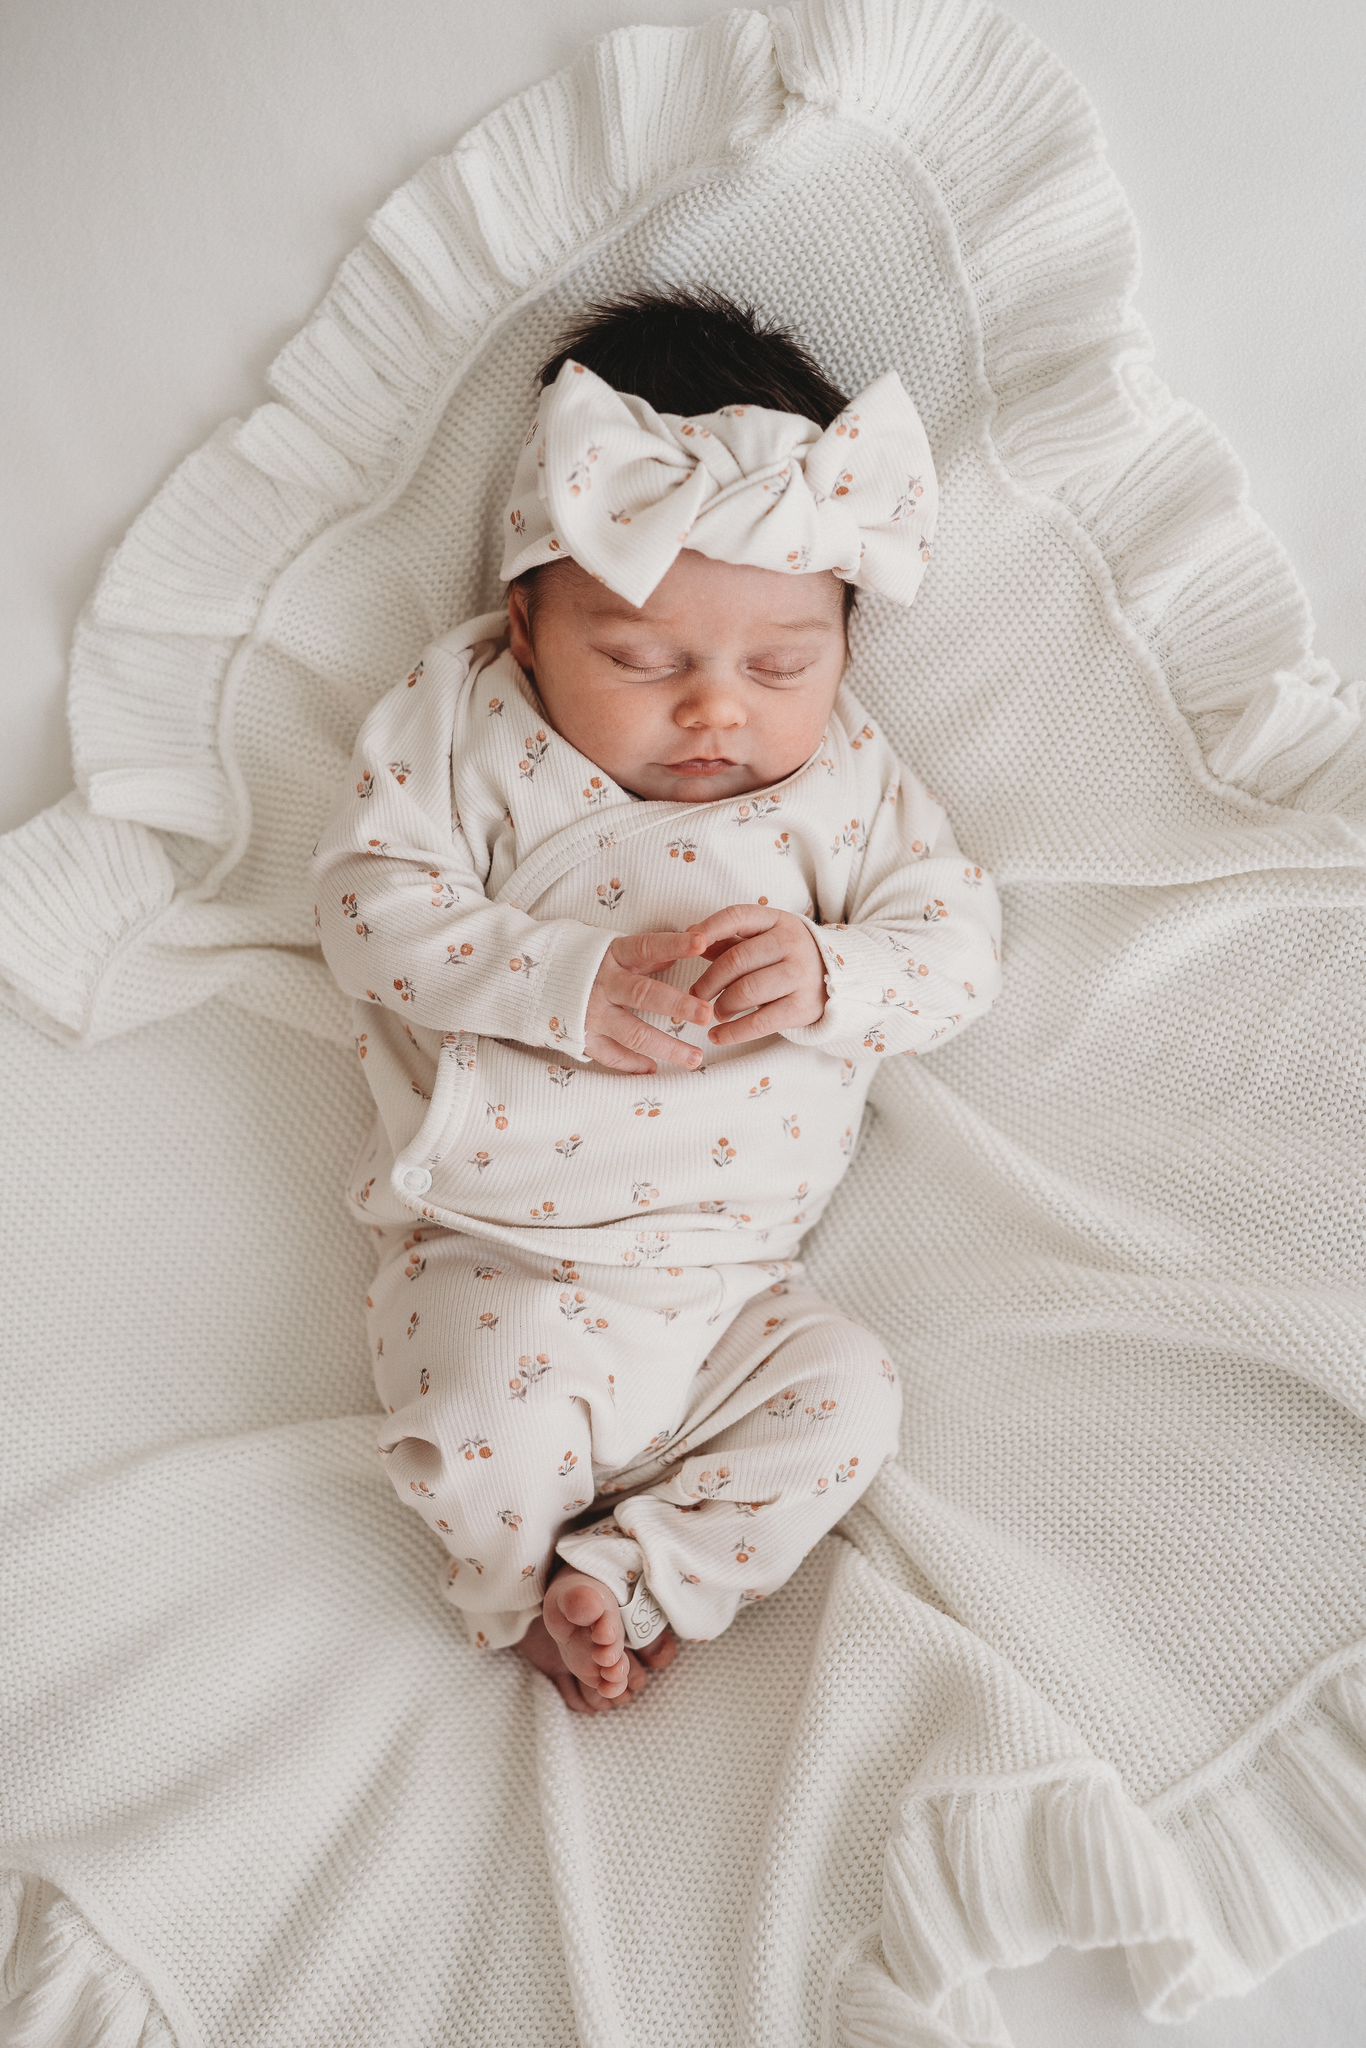 Serene slaap: een schattige baby gekleed in een gebloemde outfit met een bijpassende haarband Peach Blossom van Yumi Baby slaapt vredig op een zachte, gegolfde deken.